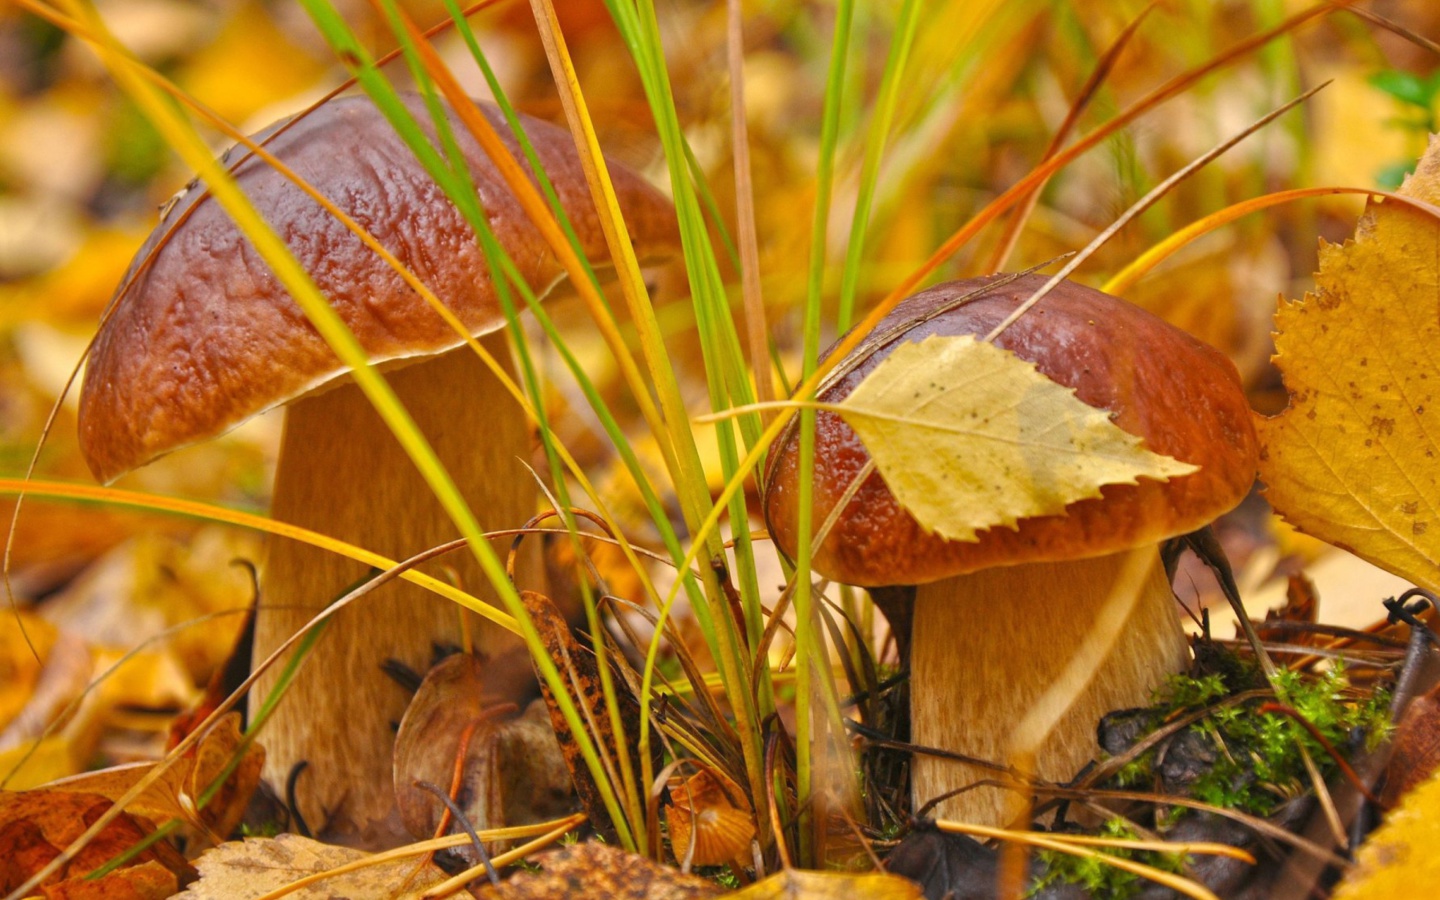 Обои Autumn Mushrooms with Yellow Leaves 1440x900